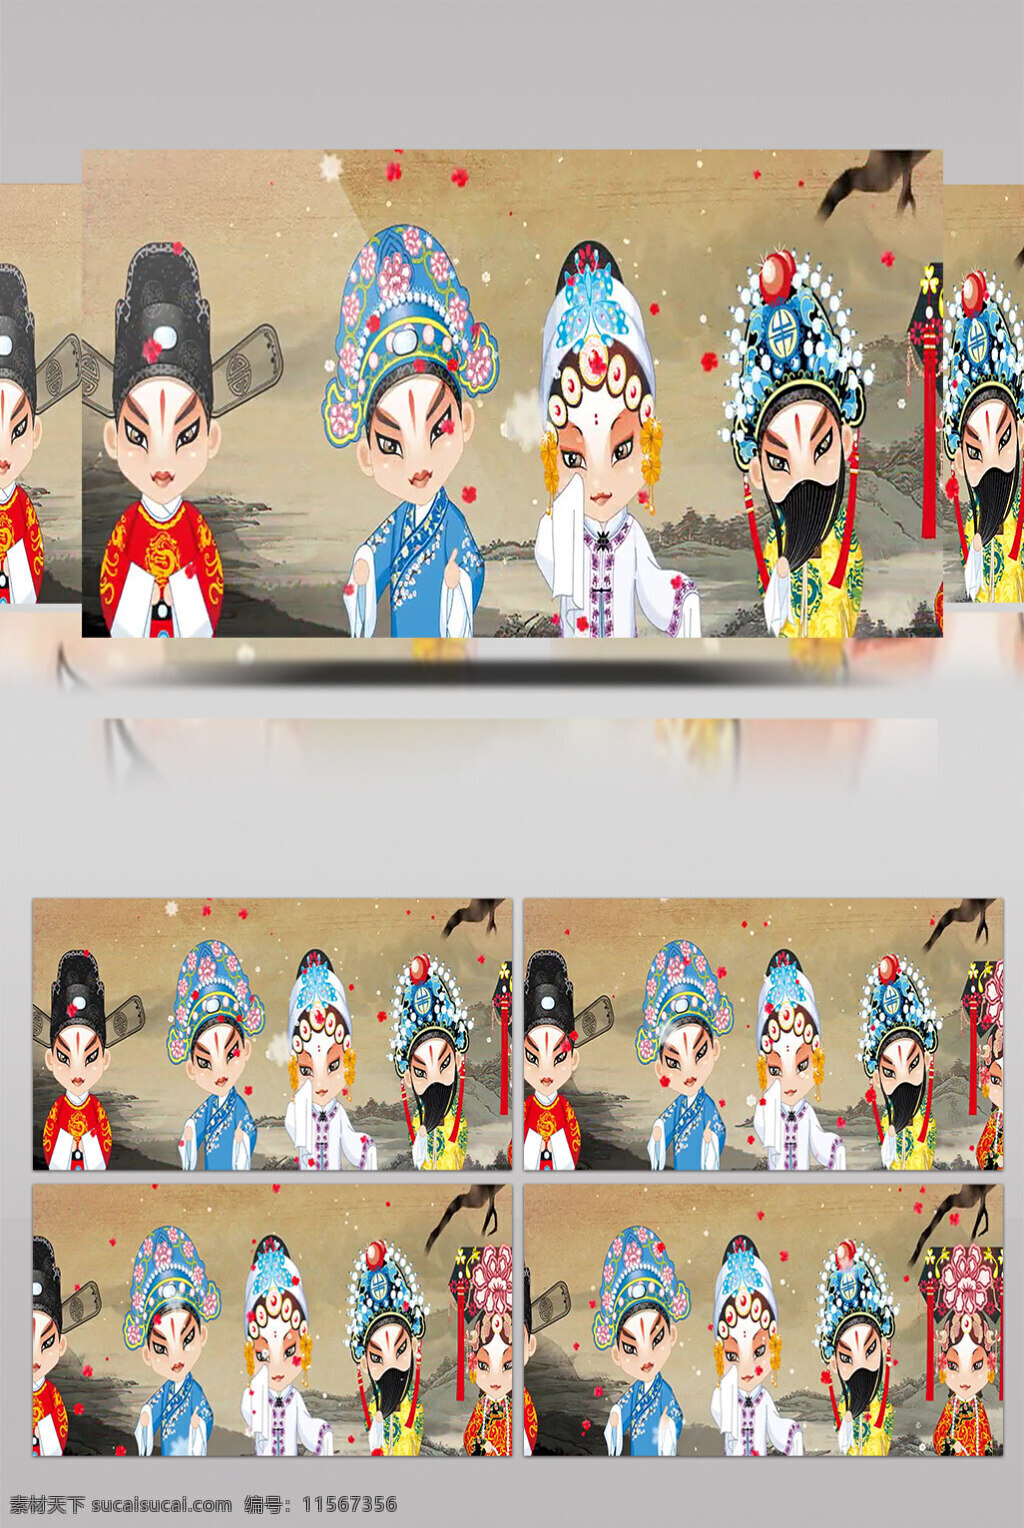 皮影戏 视频 古代中国 文化流传 生活 实用 背景 舞台背景素材 花旦角色